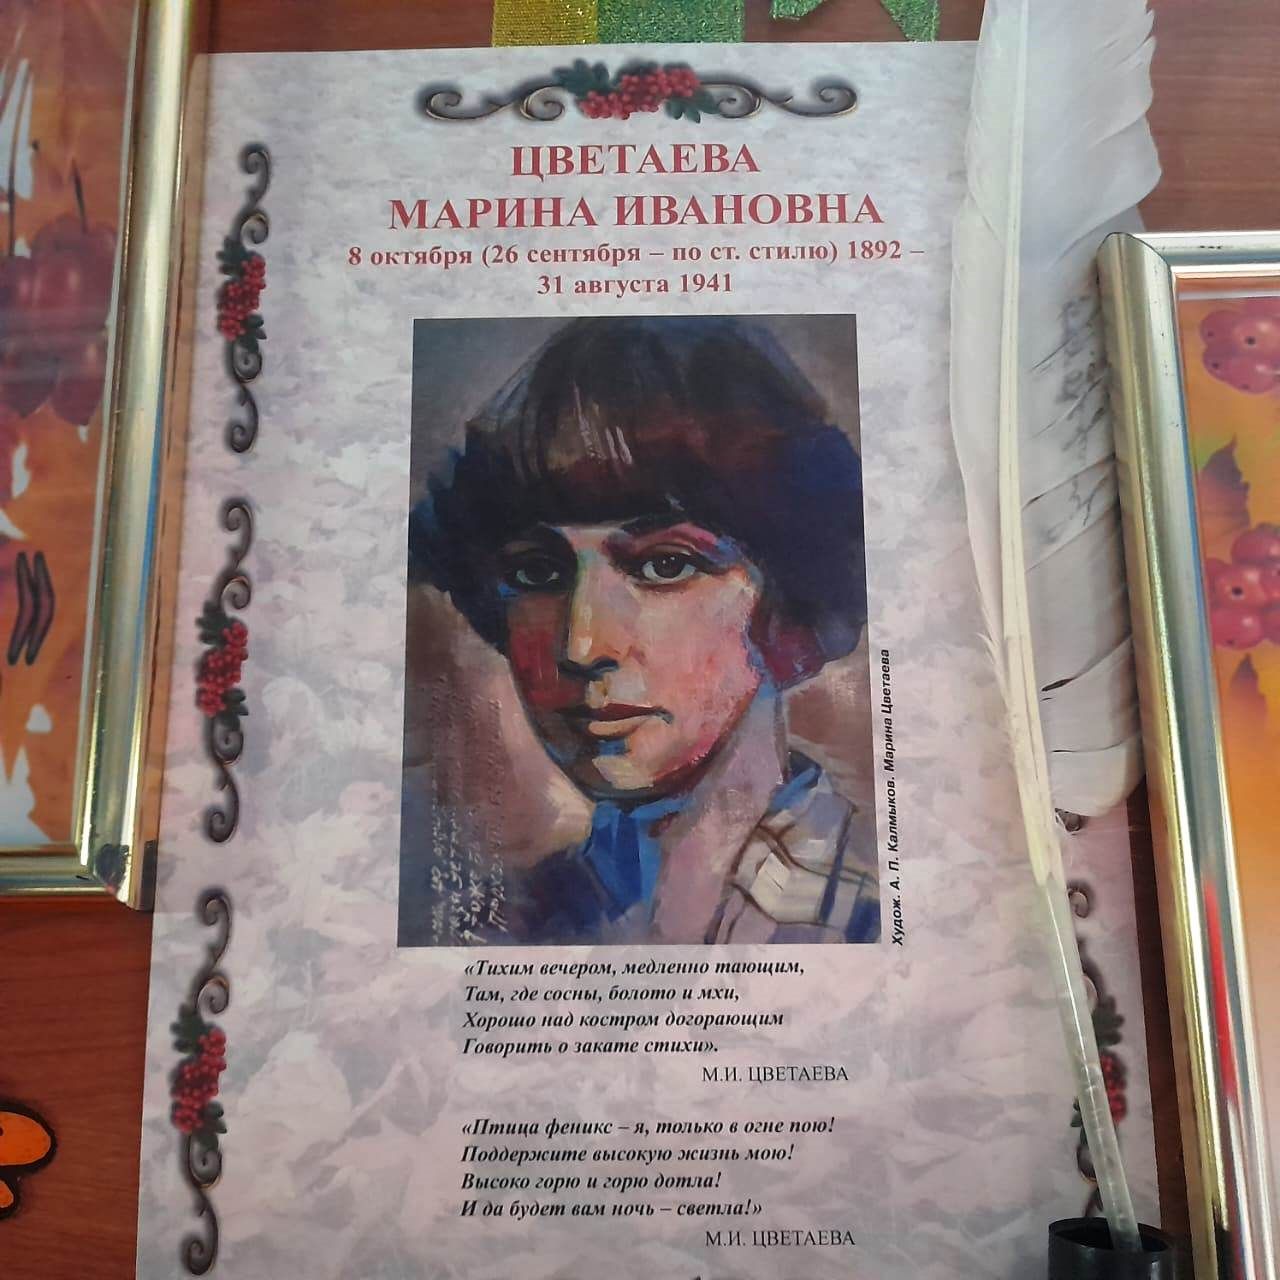 В Лаишевской библиотеке отметили юбилей Марины Цветаевой